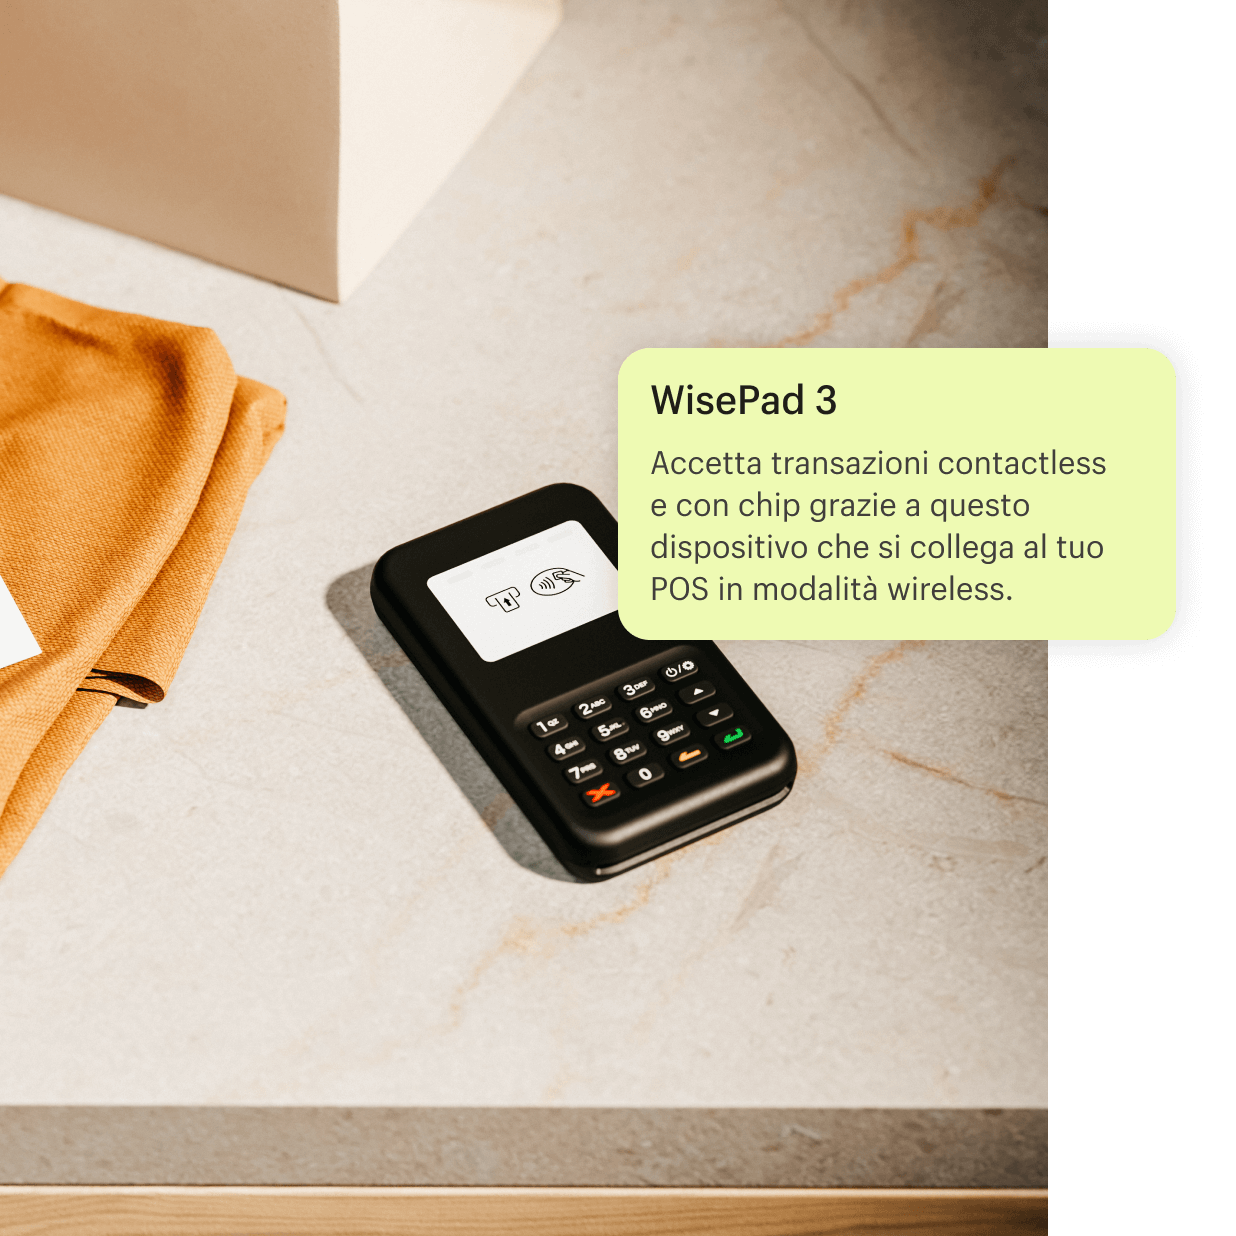 Immagine del dispositivo WisePad 3 sul bancone dopo aver completato una transazione con una cliente. WisePad 3 accetta transazioni contactless e con chip e si collega al tuo POS in modalità wireless.